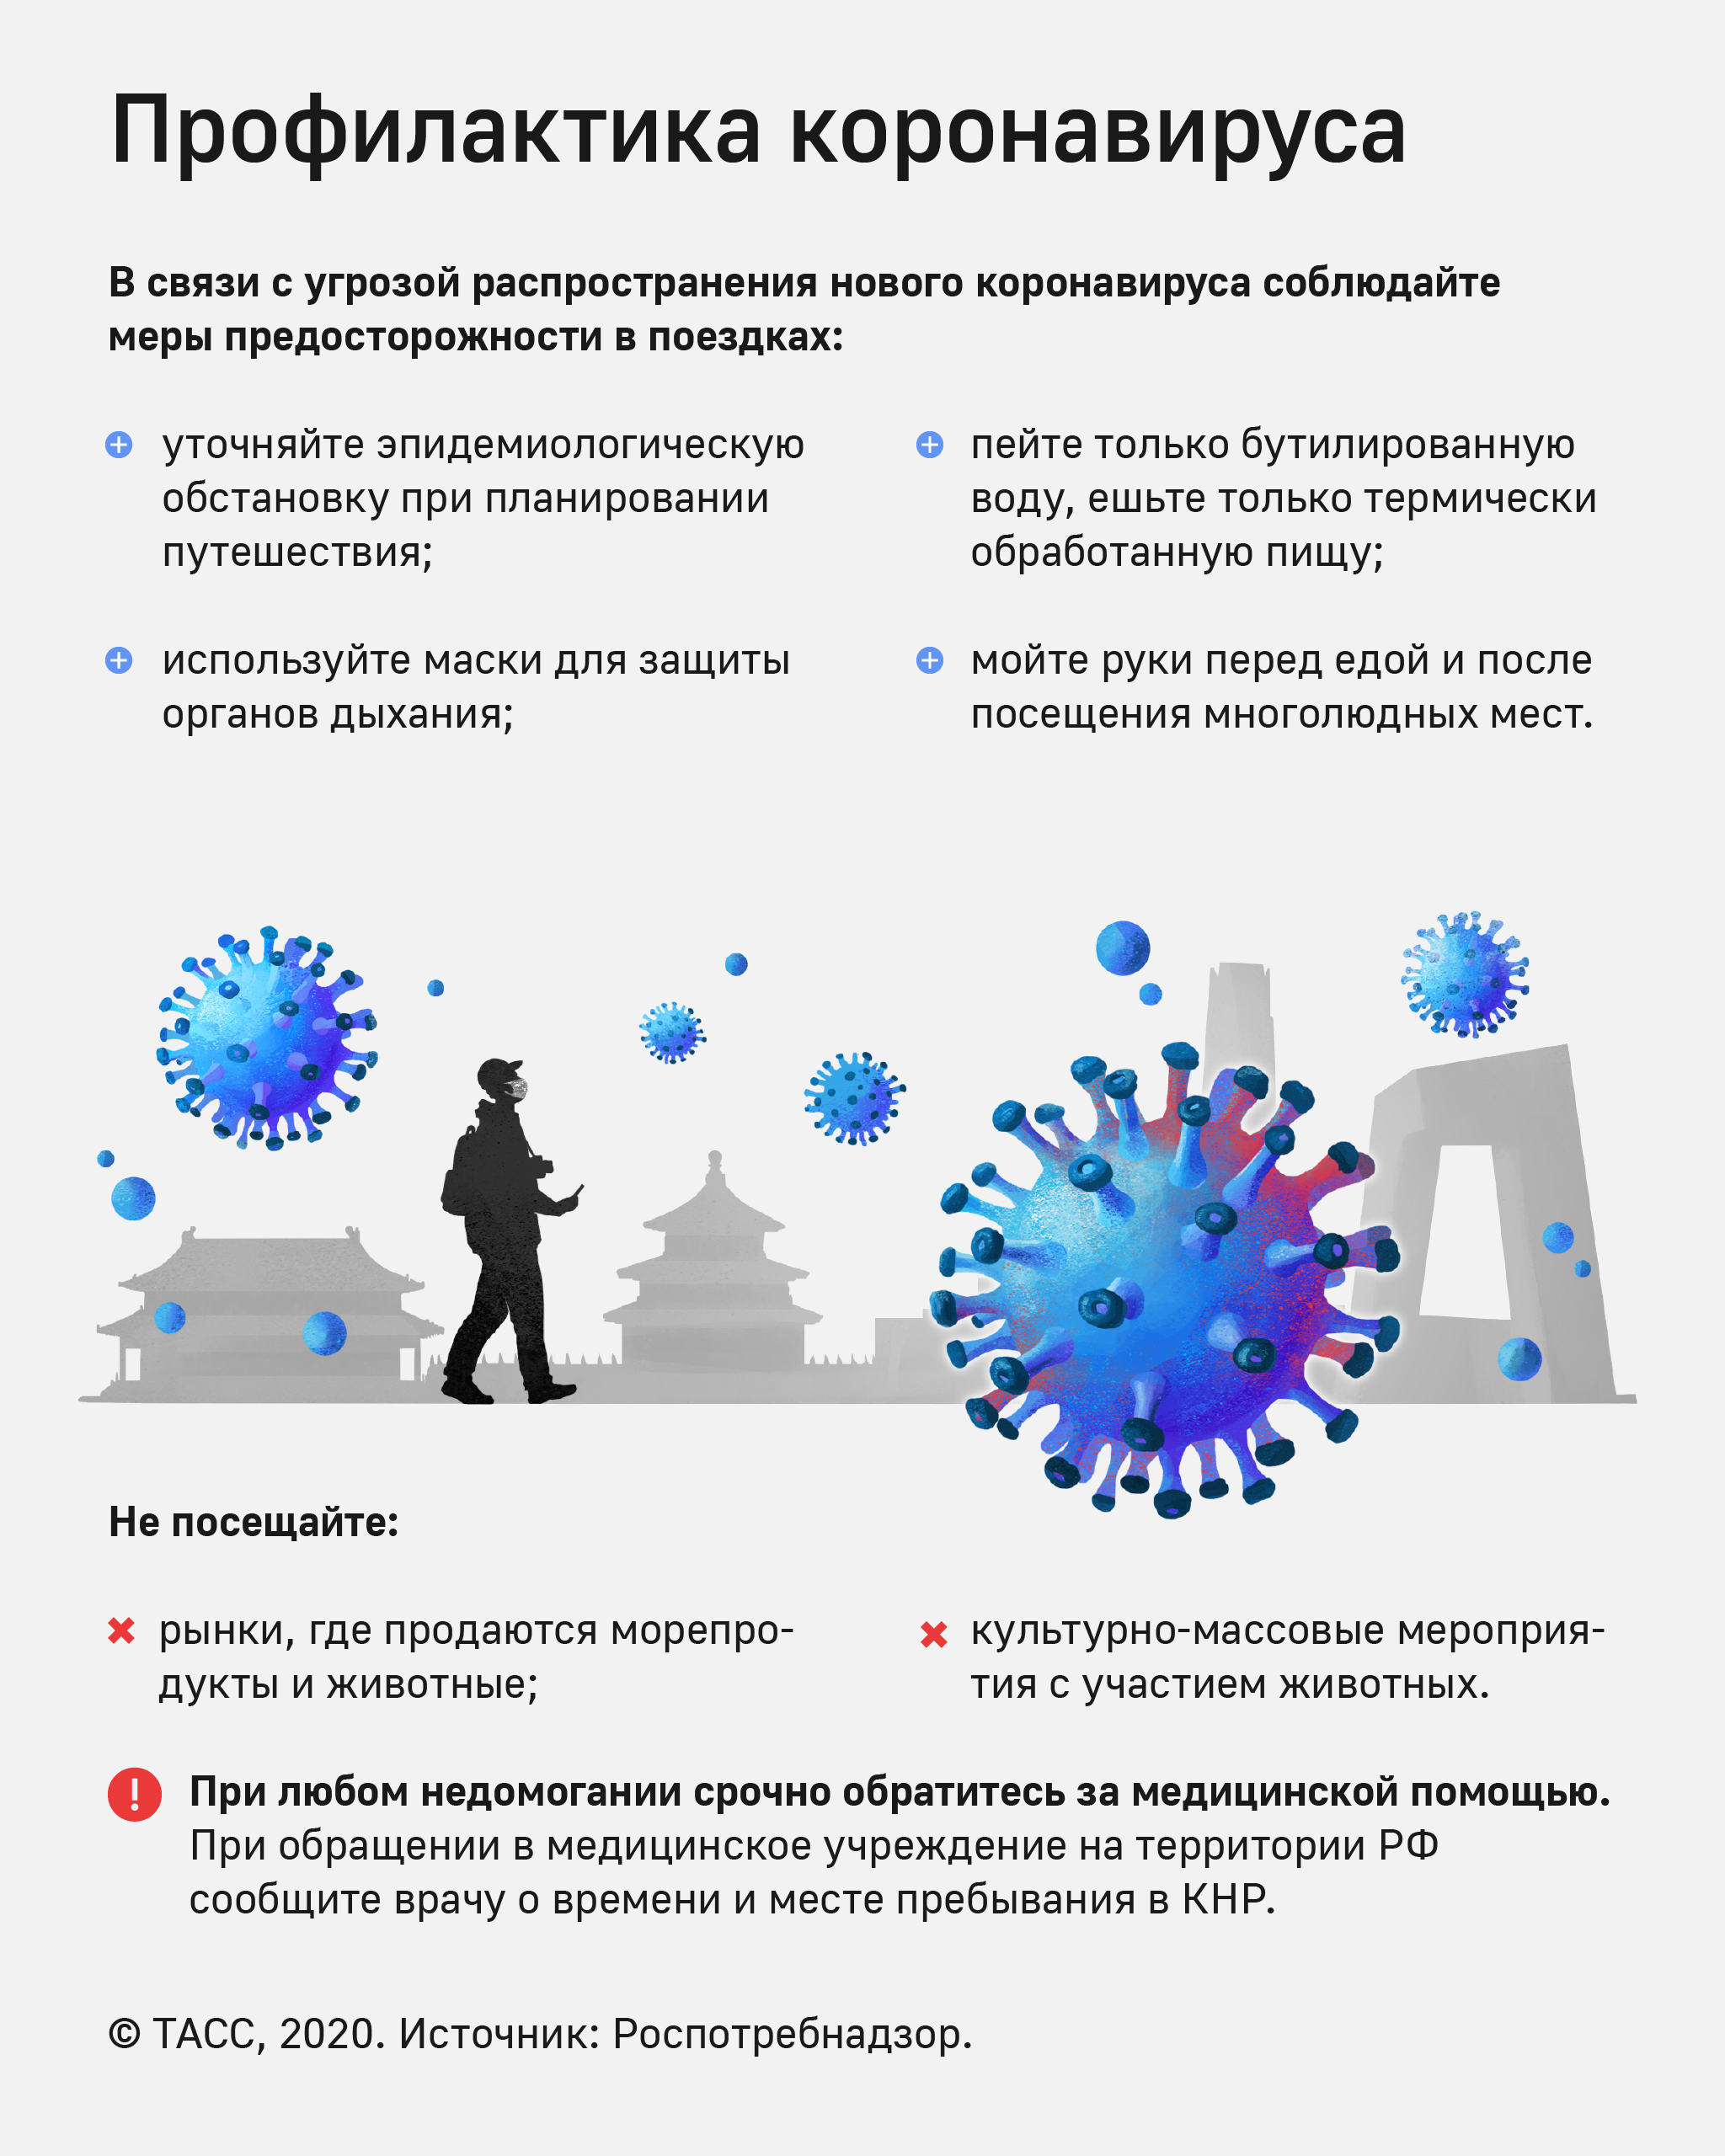 В целях недопущения распространения случаев заболеваний, вызванных новым коронавирусом в Российской Федерации необходимо соблюдать меры предосторожности